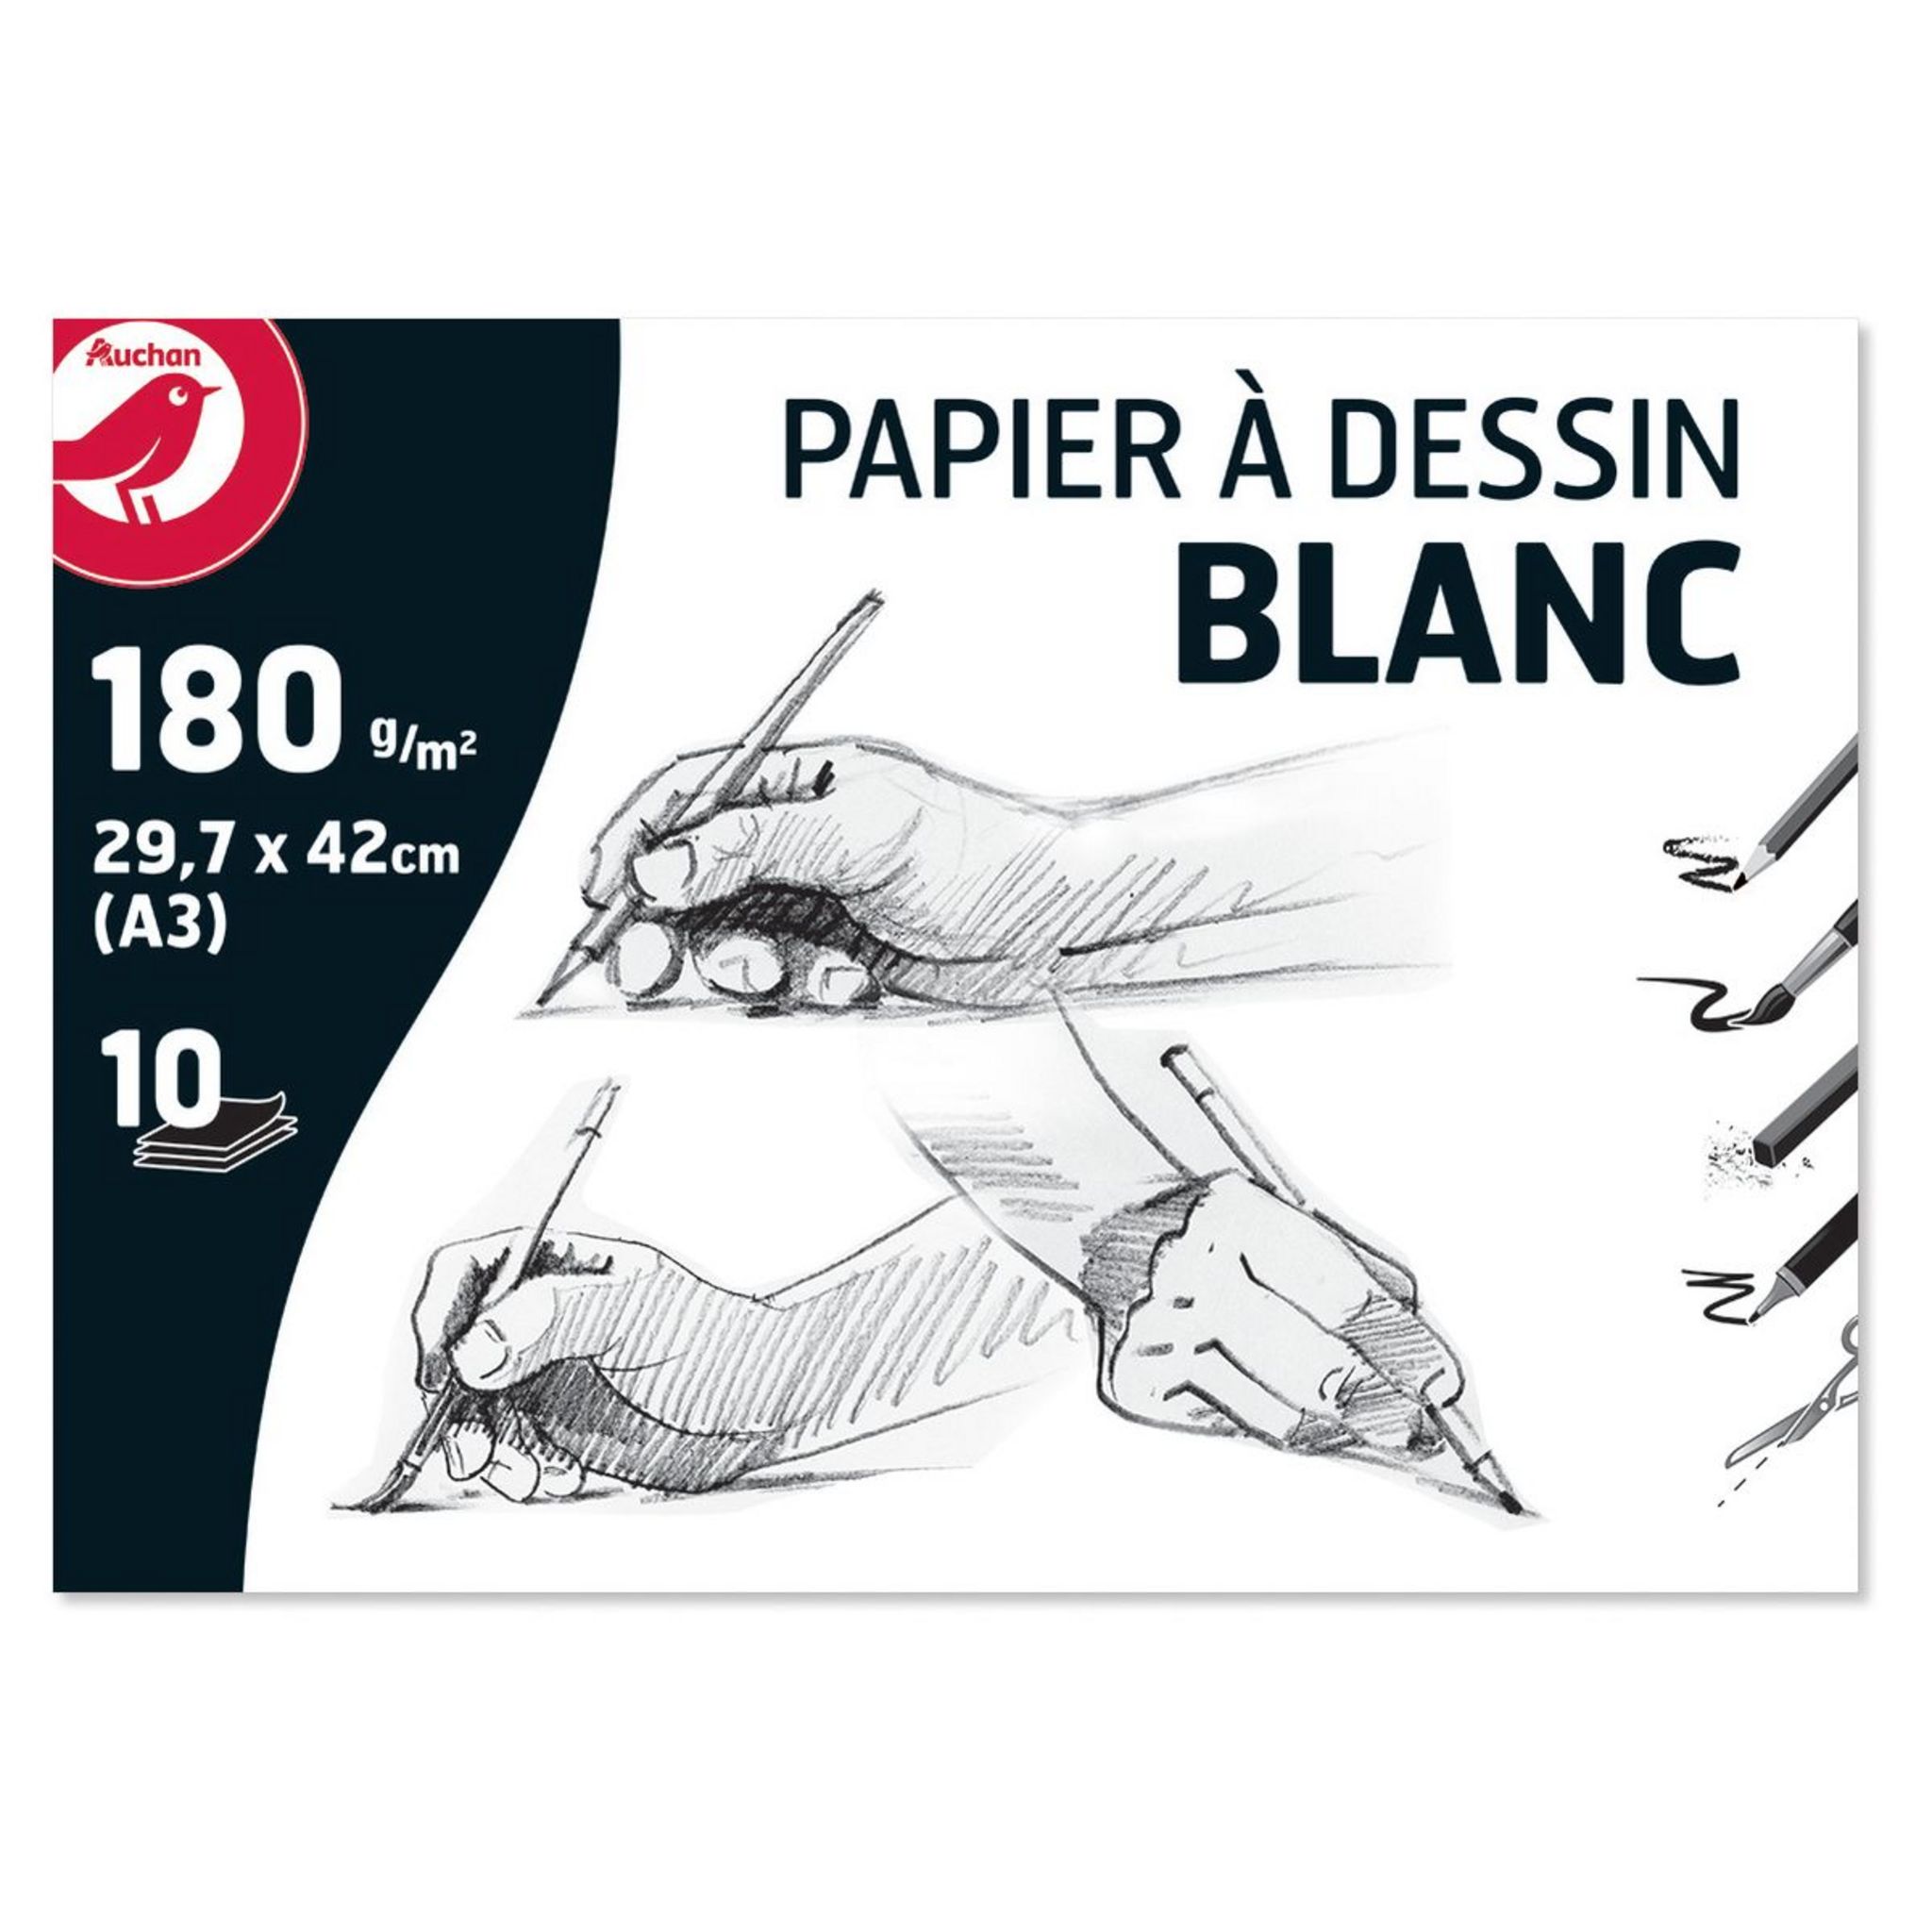 Papier dessin blanc - Format A3 ( 29.7 x 42 cm ) - Ramettes de